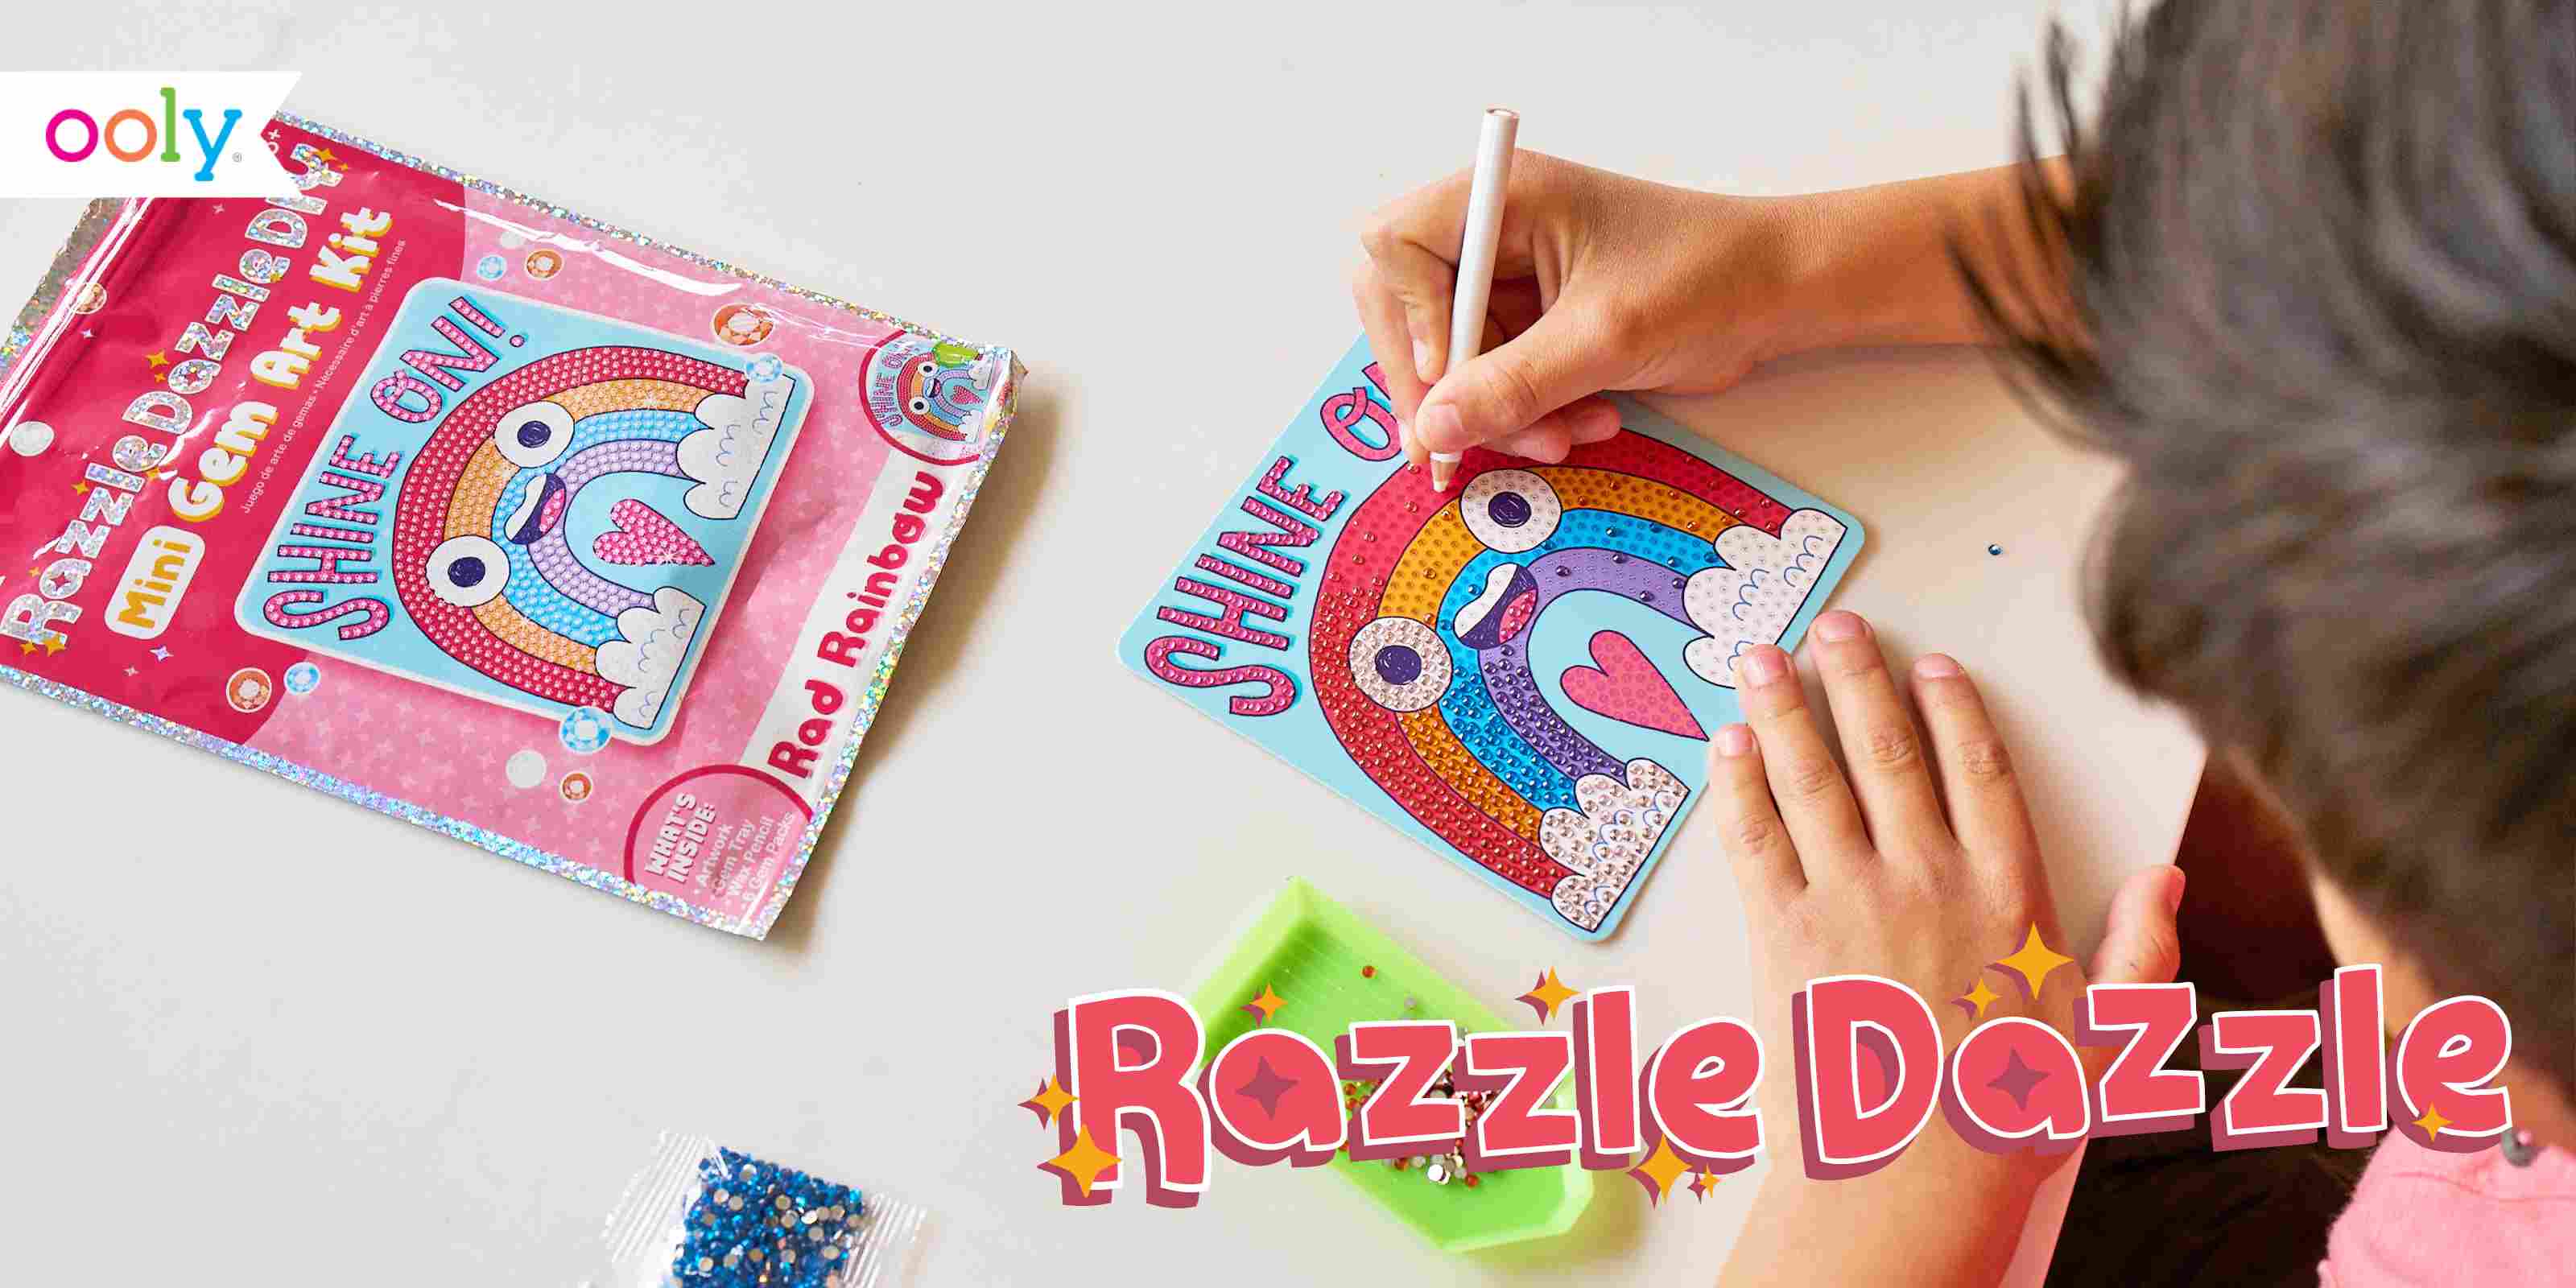 Razzle Dazzle Men in Black Glitter, Glitter for Slime Art, Crafts, Scr –  Razzle Dazzle Online